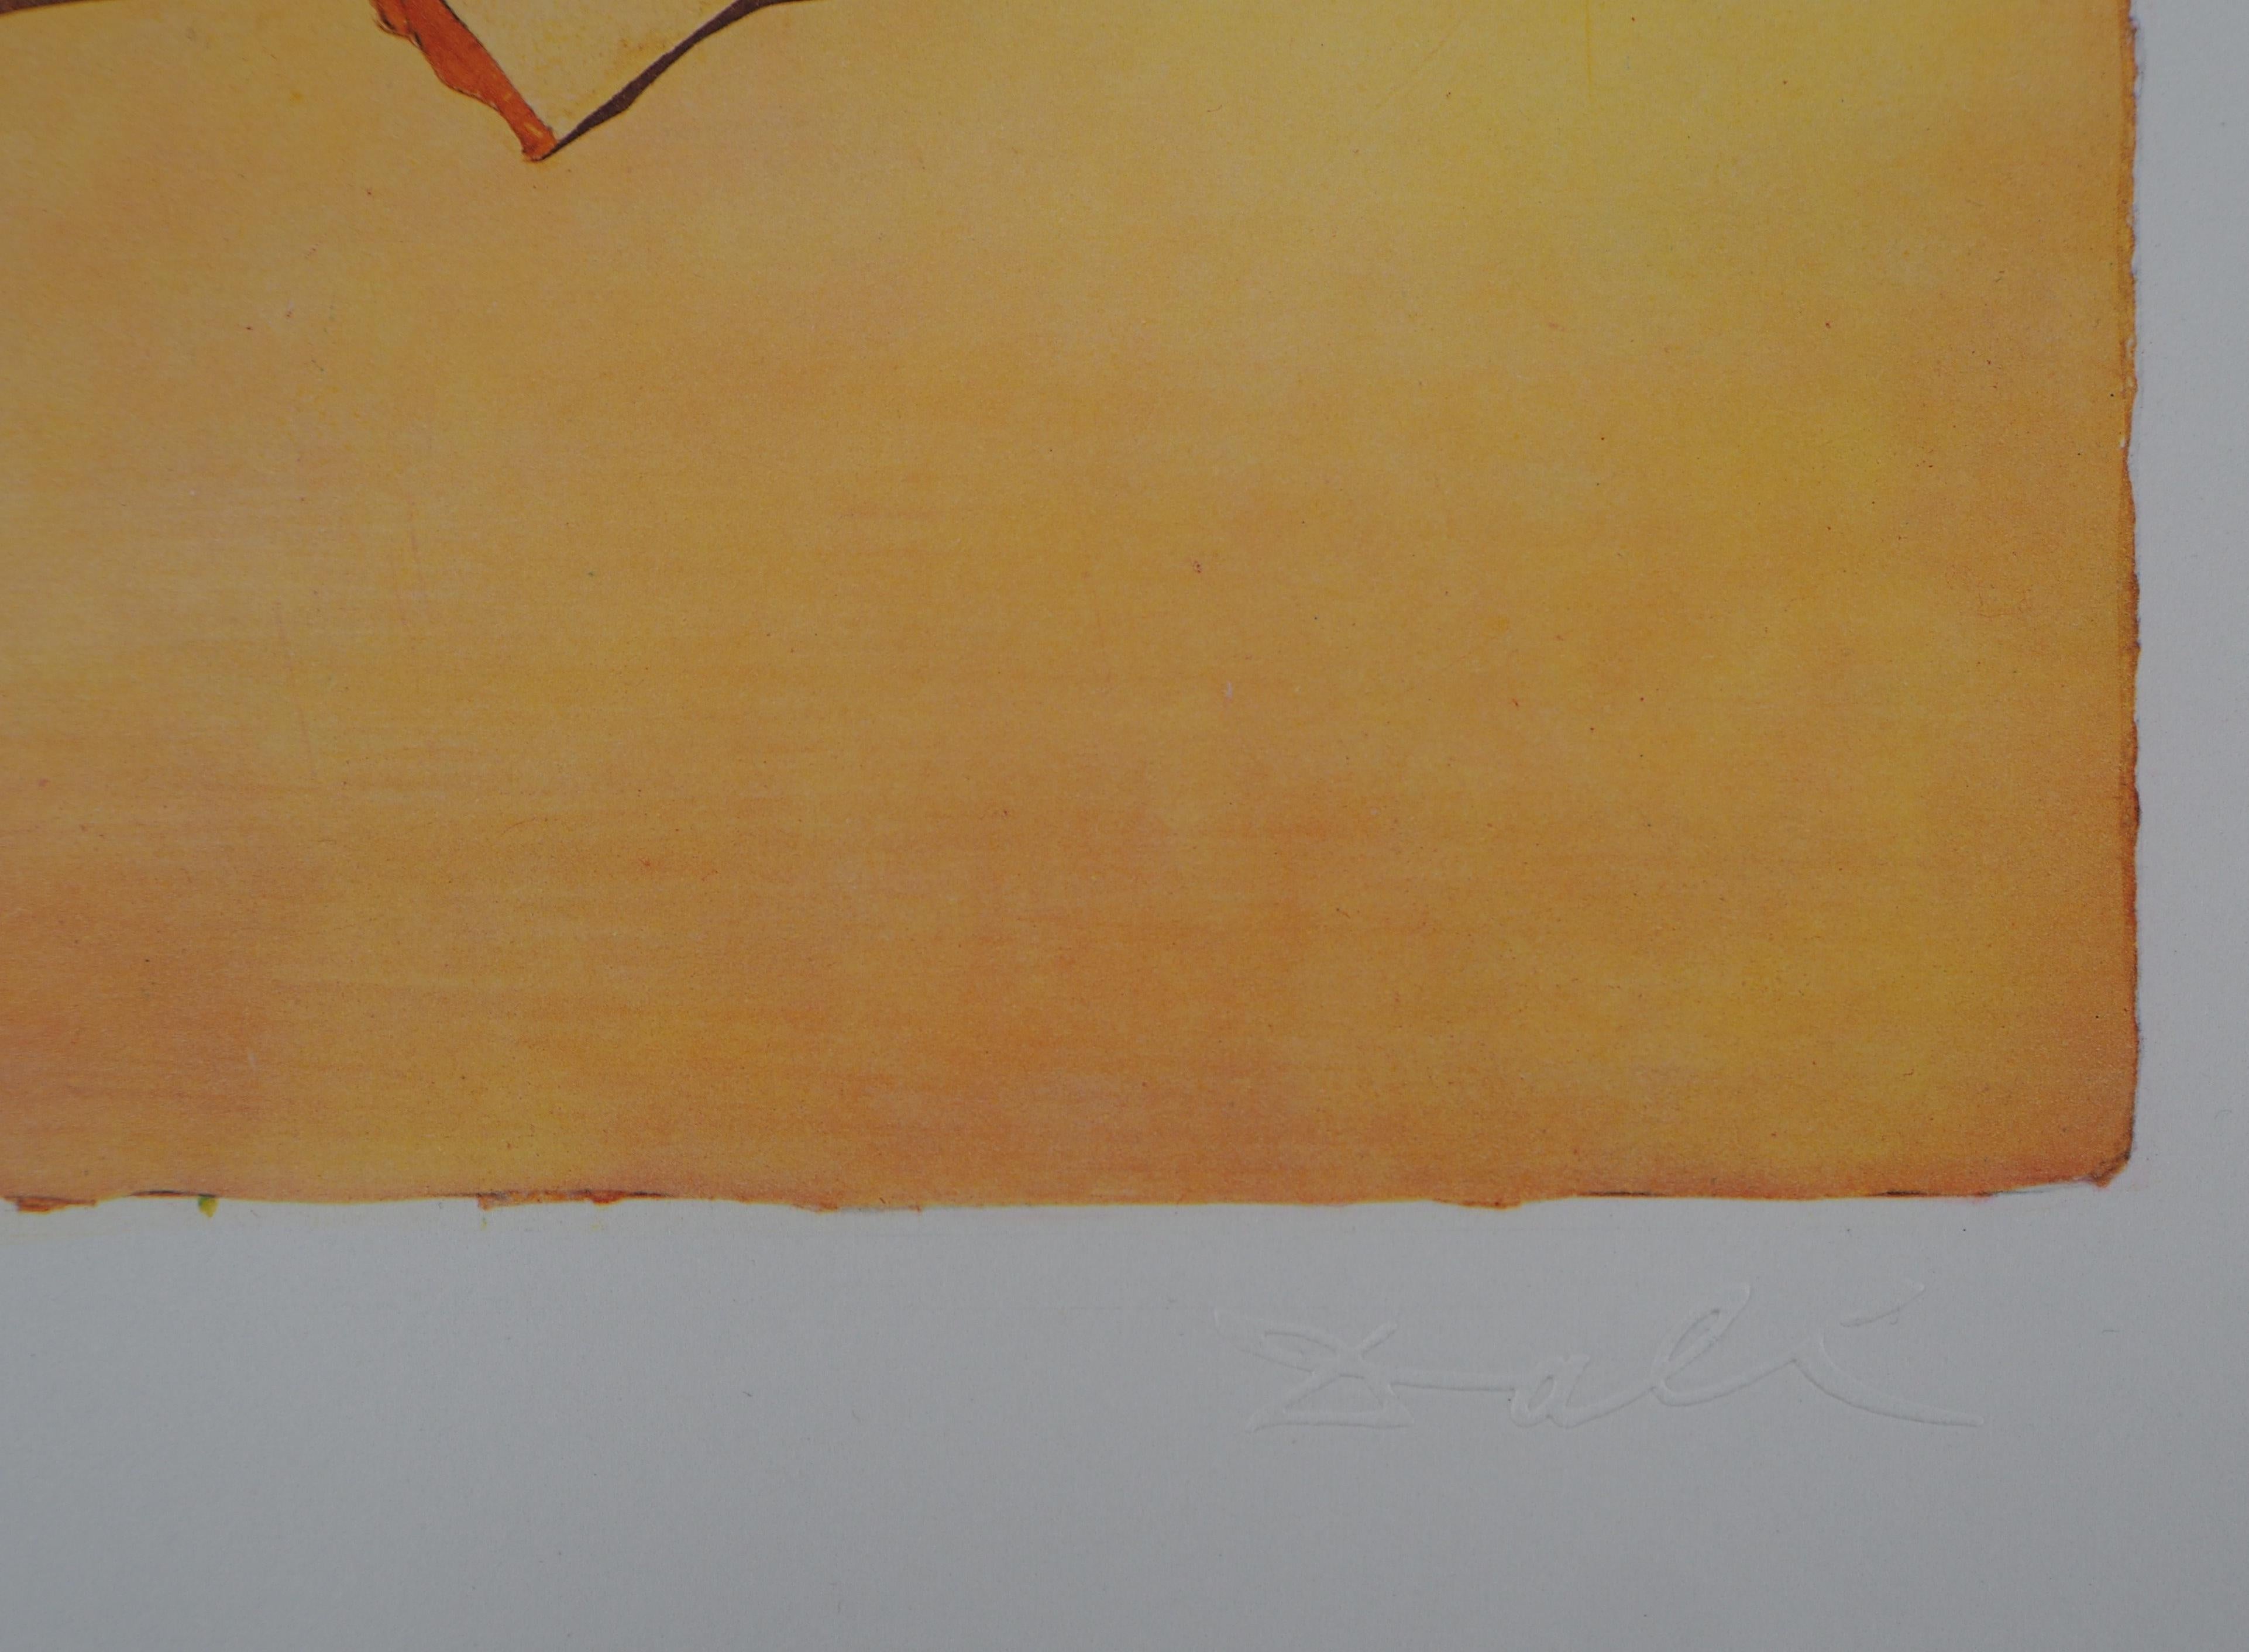 Salvador DALI (1904-1969)
Schmetterlingssuite : Roussillon, 1969

Heliogravüre / Photogravüre nach einem Originalentwurf von Dali
Blindstempel Signatur unten rechts
Nummeriert / 1700 Exemplare
Gedruckt in der Dräger-Werkstatt
Auf Vellum 53,5 x 37 cm